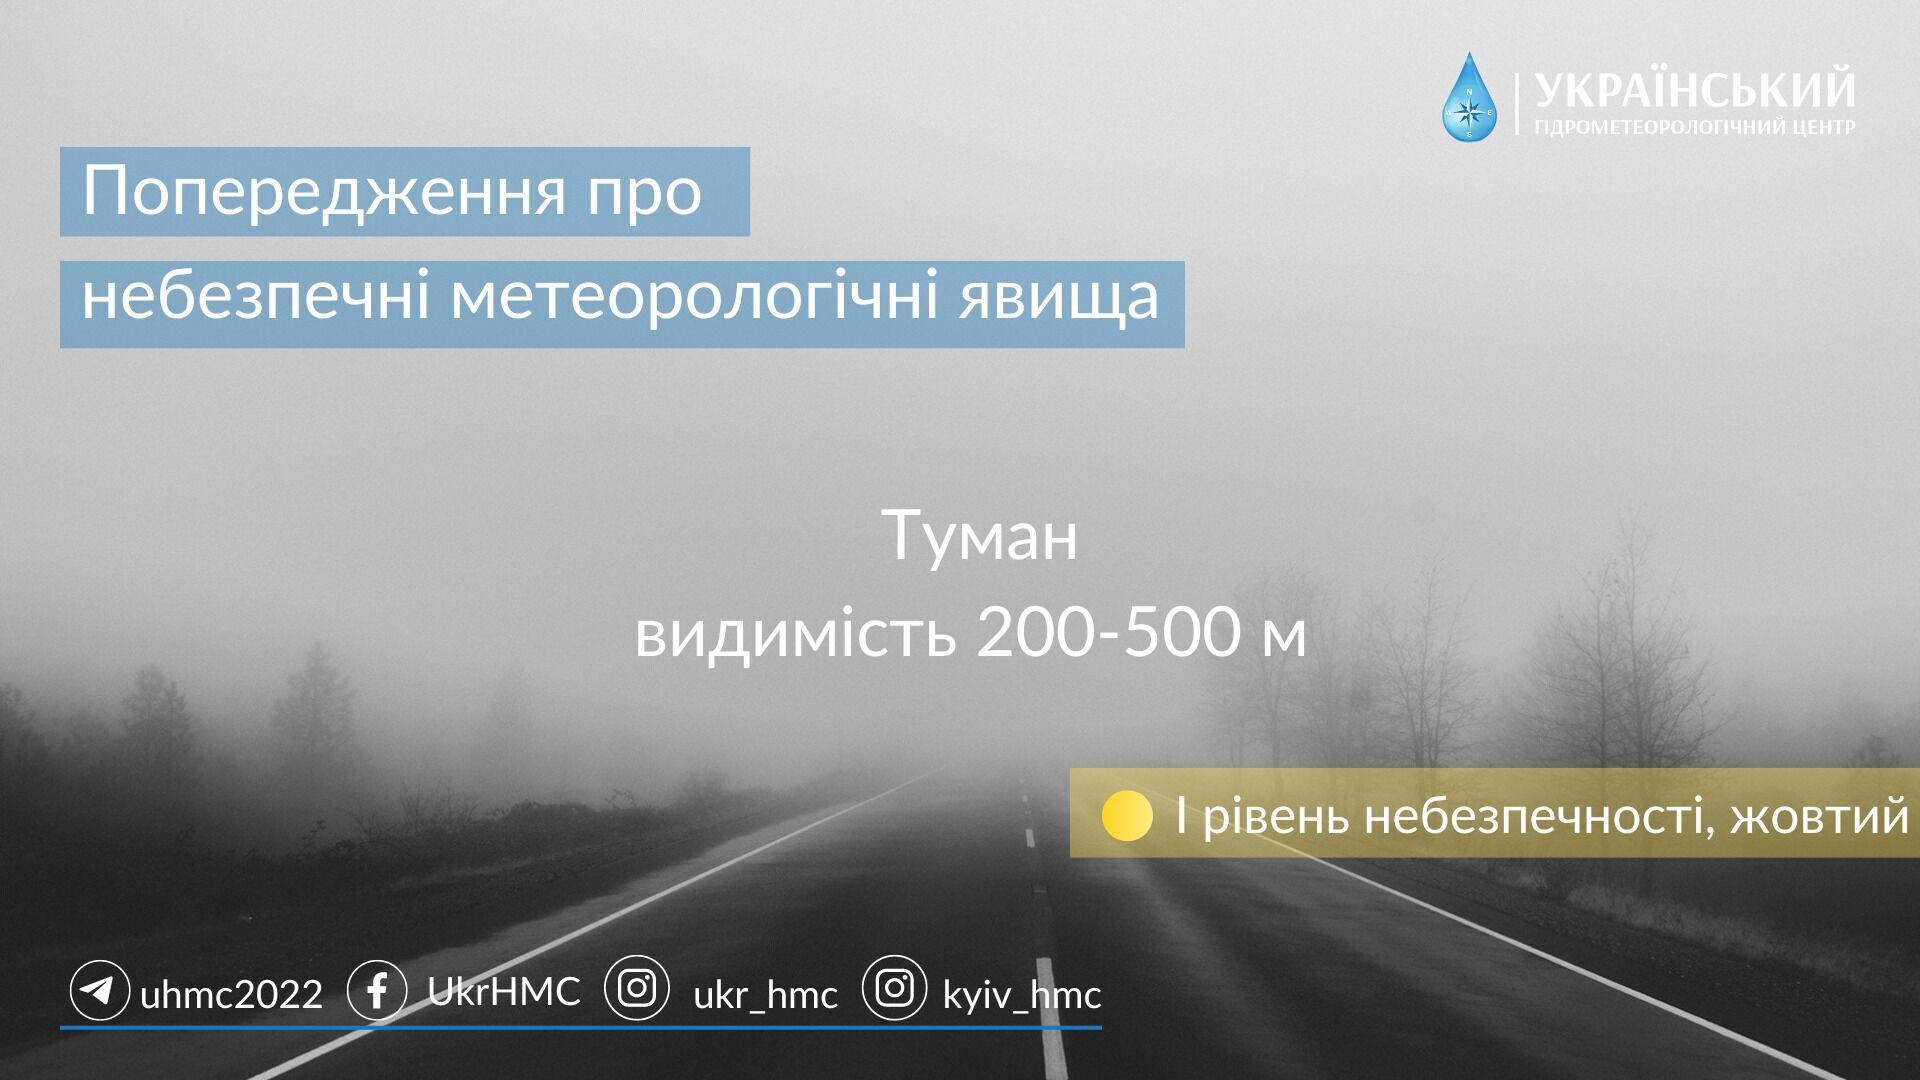 Попередження про туман в Україні на 9 листопада 2022 року